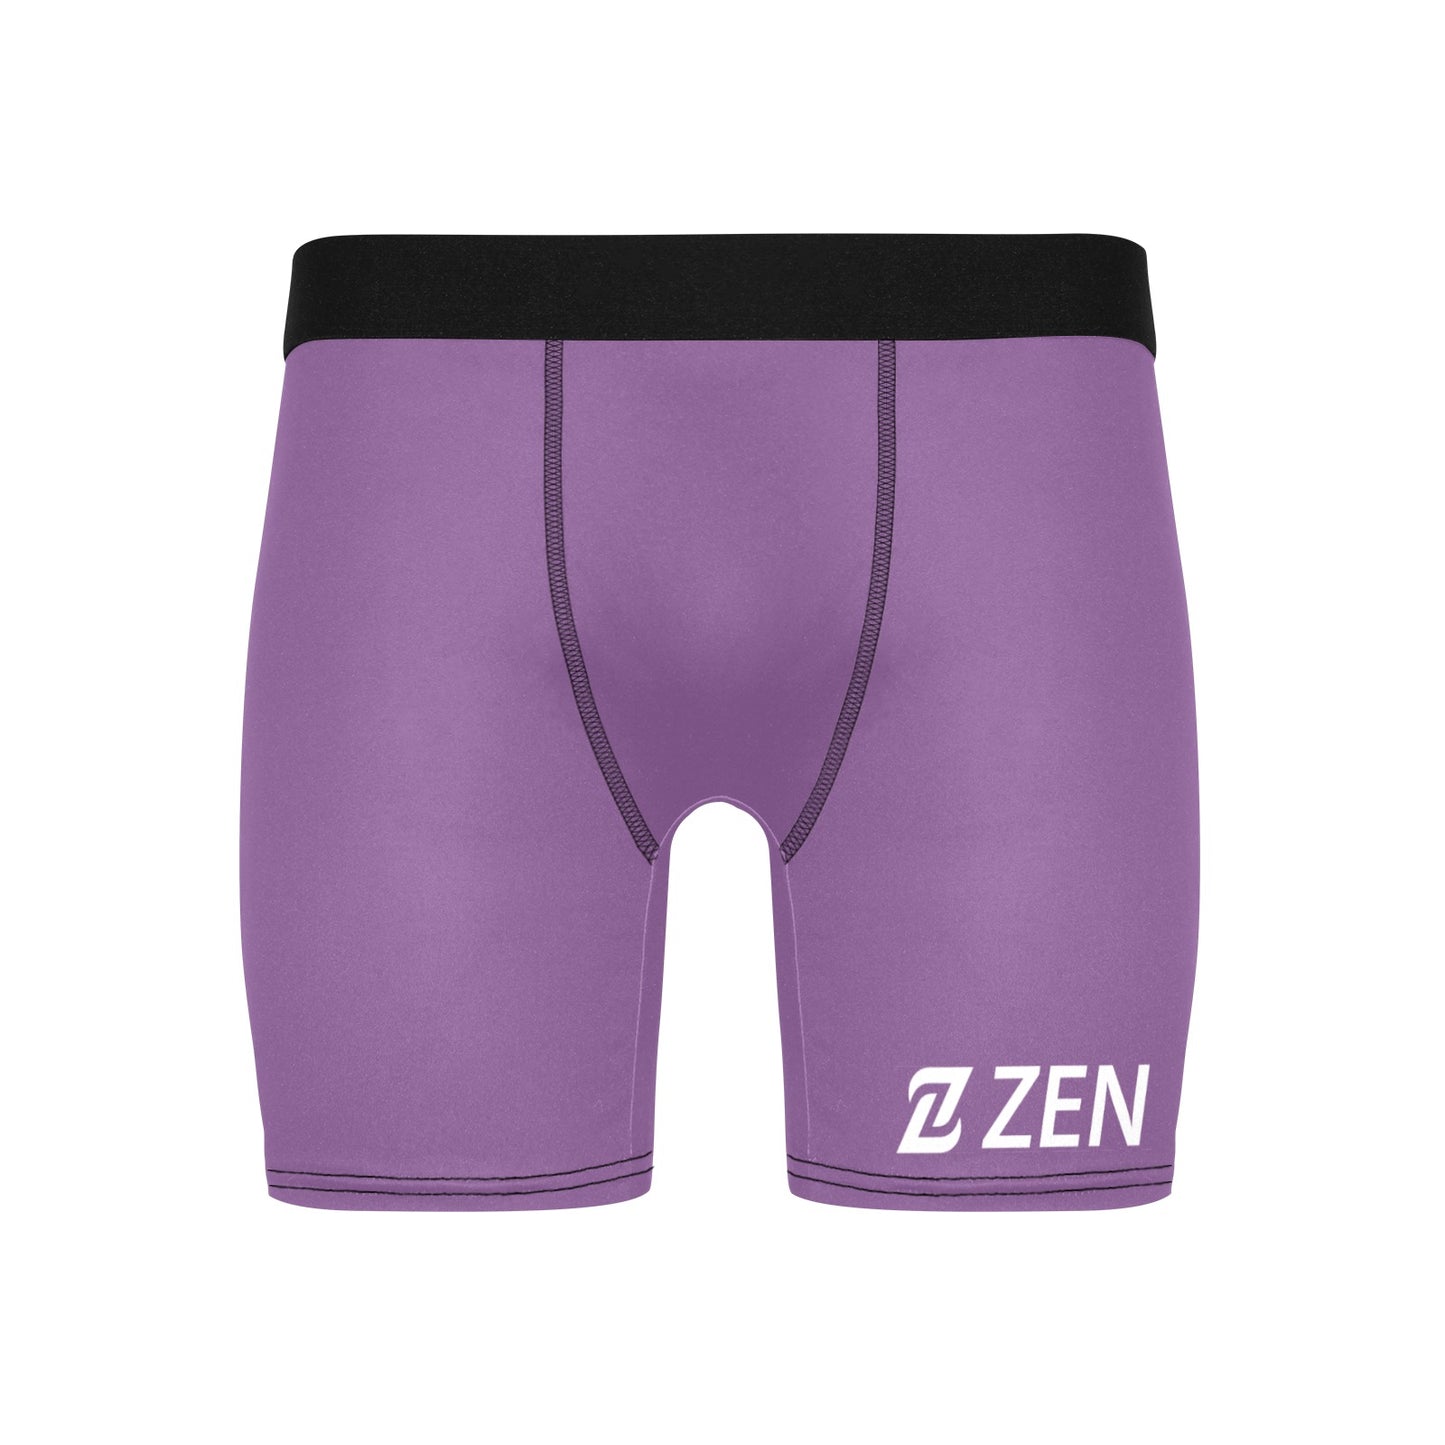 Zen Boxers Long -Lavender